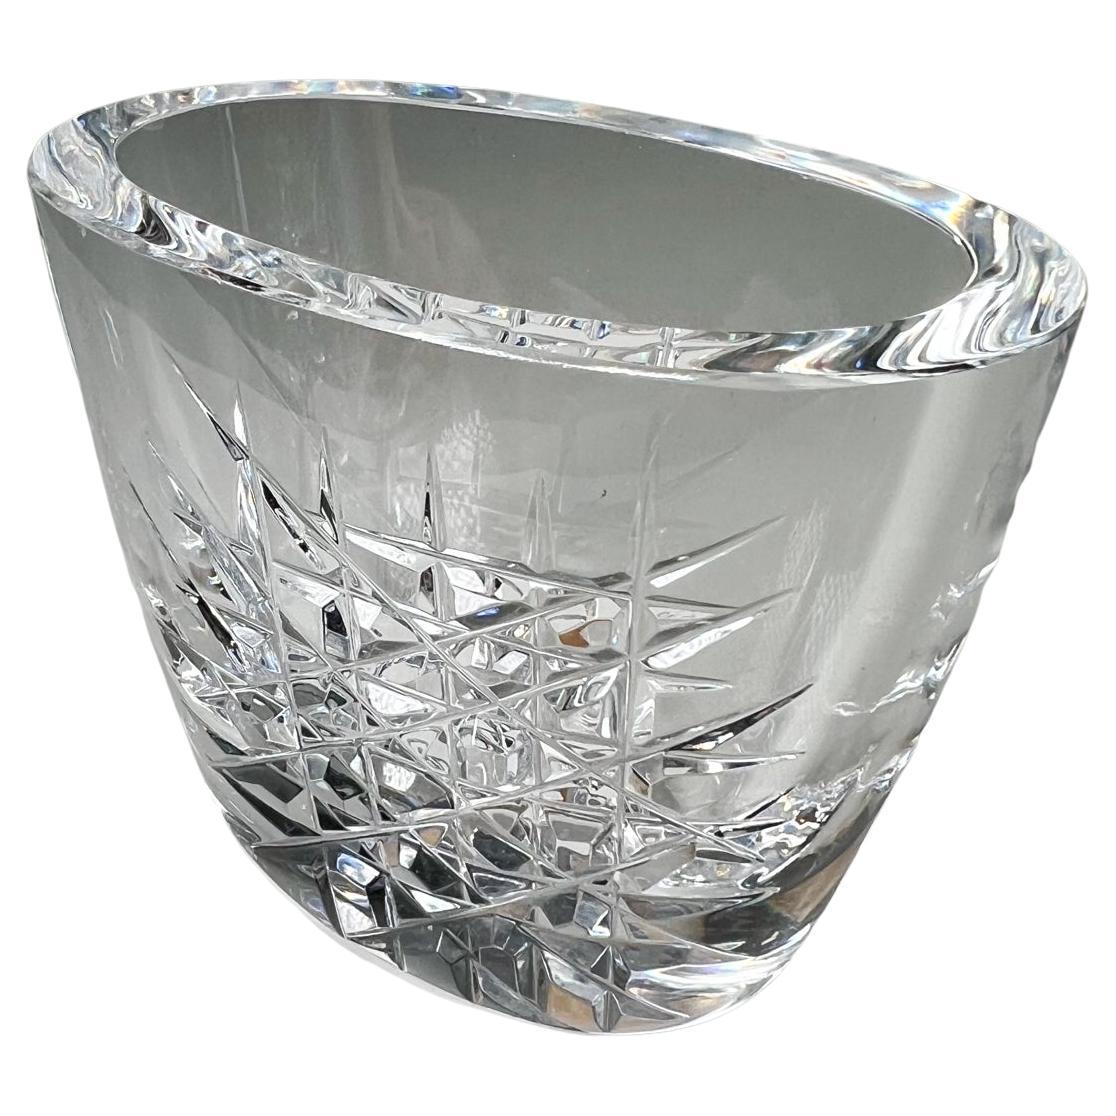 https://a.1stdibscdn.com/1960s-swedish-vintage-orrefors-crystal-glass-vase-for-sale/f_9715/f_327858621676477147911/f_32785862_1676477148340_bg_processed.jpg